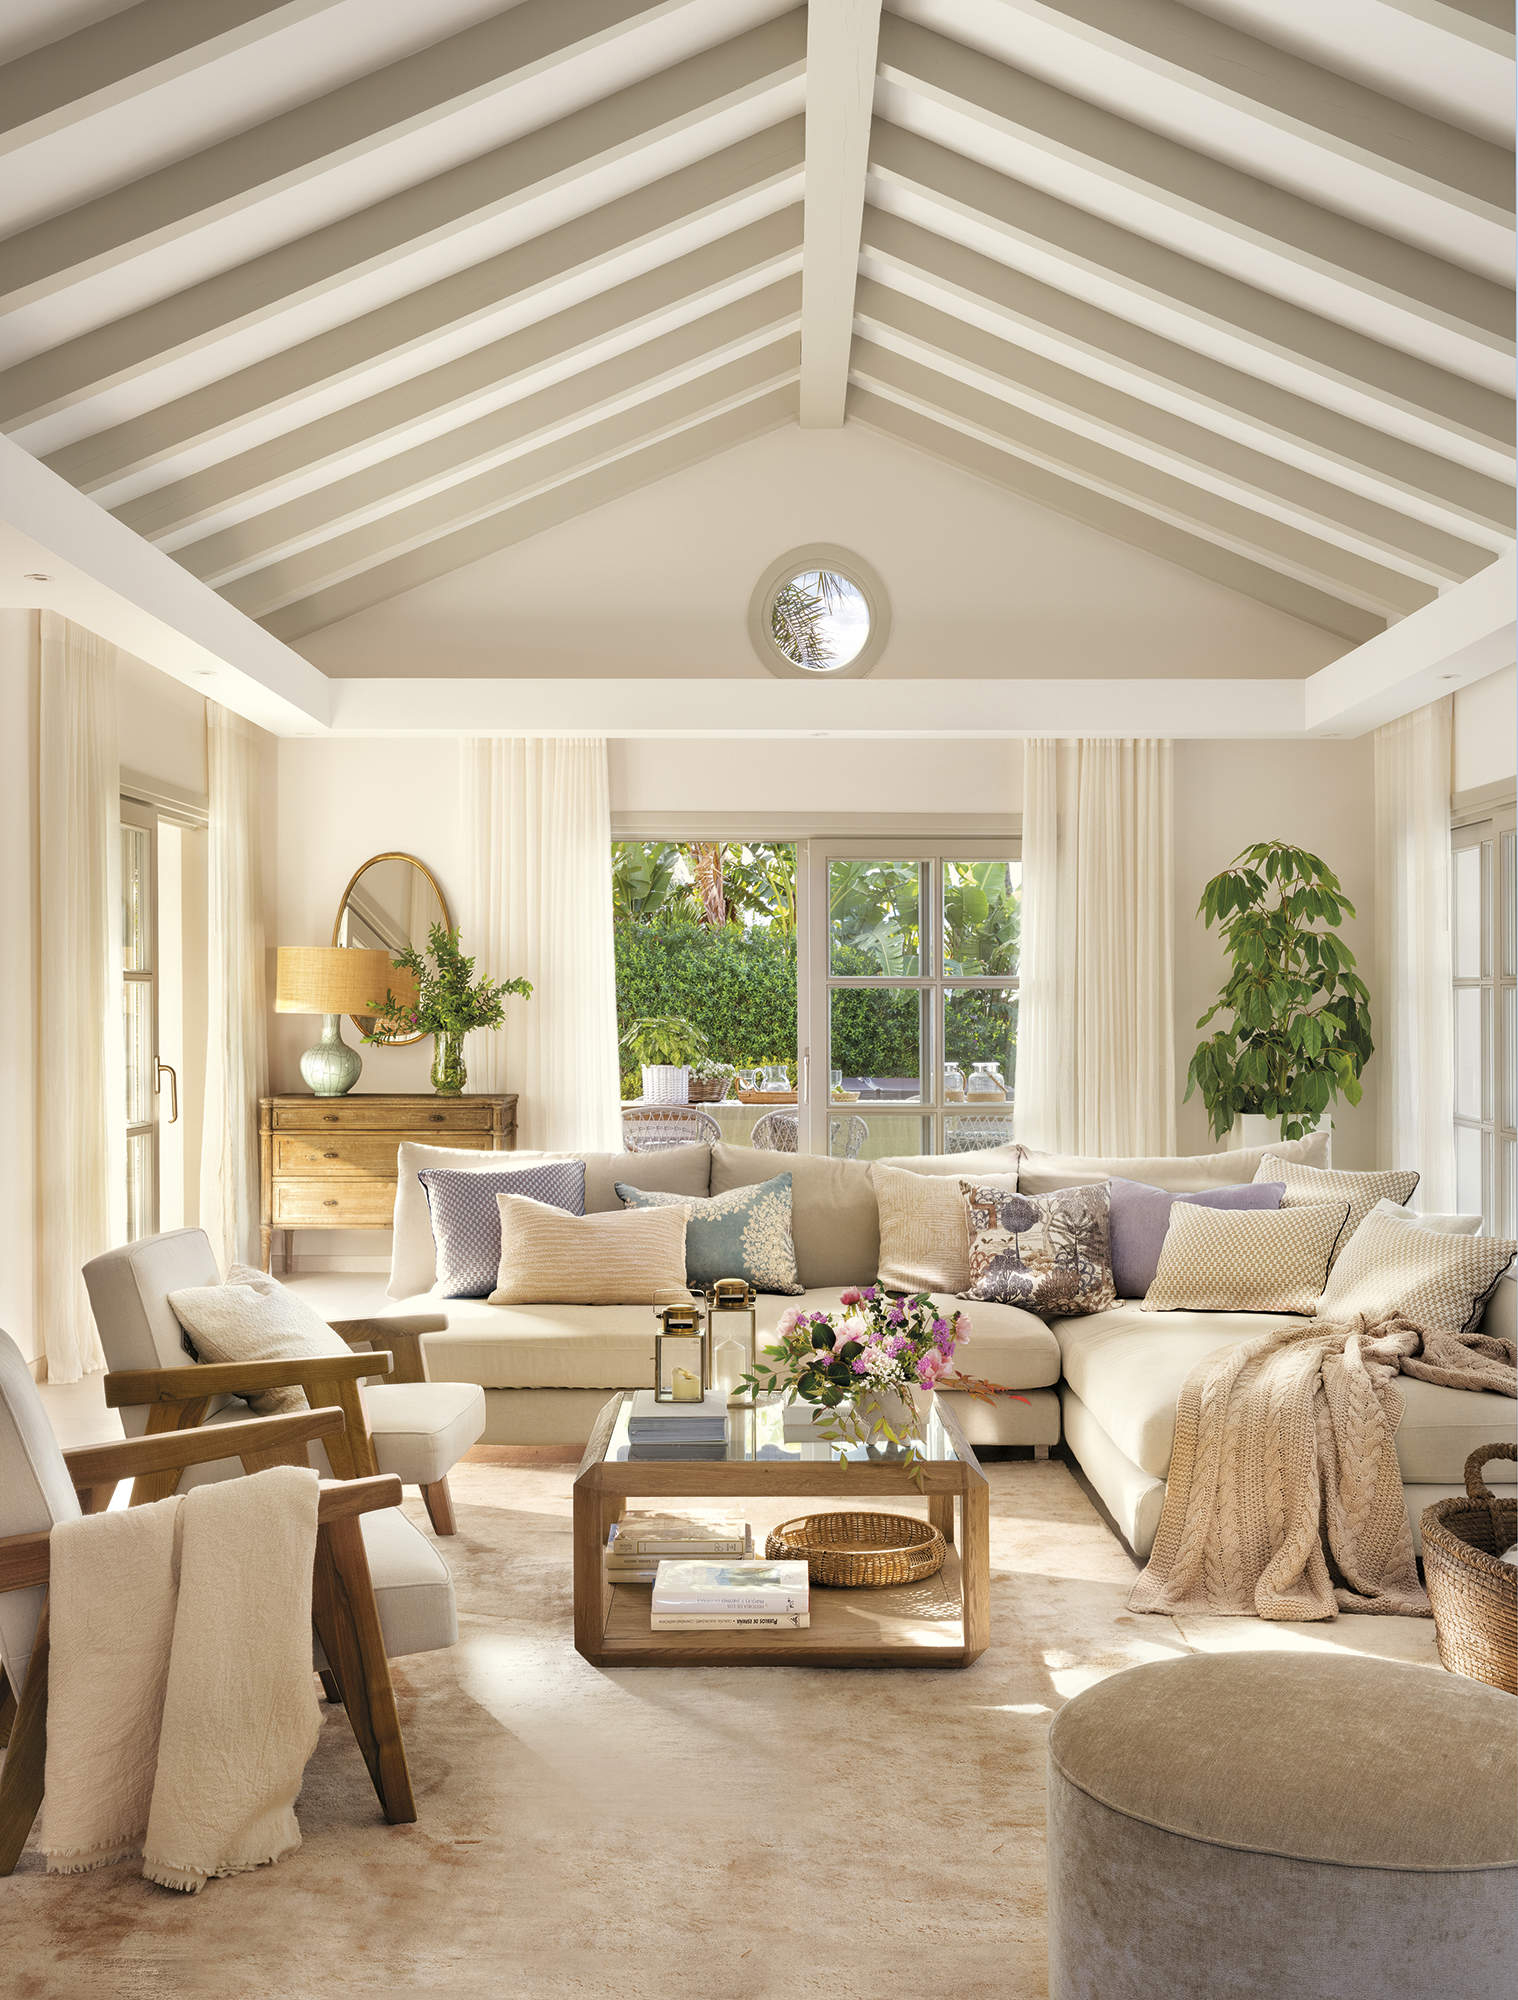 salón blanco con techo a dos aguas con vigas de madera beige, sofá esquinero, butacas de madera tapizadas, alfombra beige, puf,